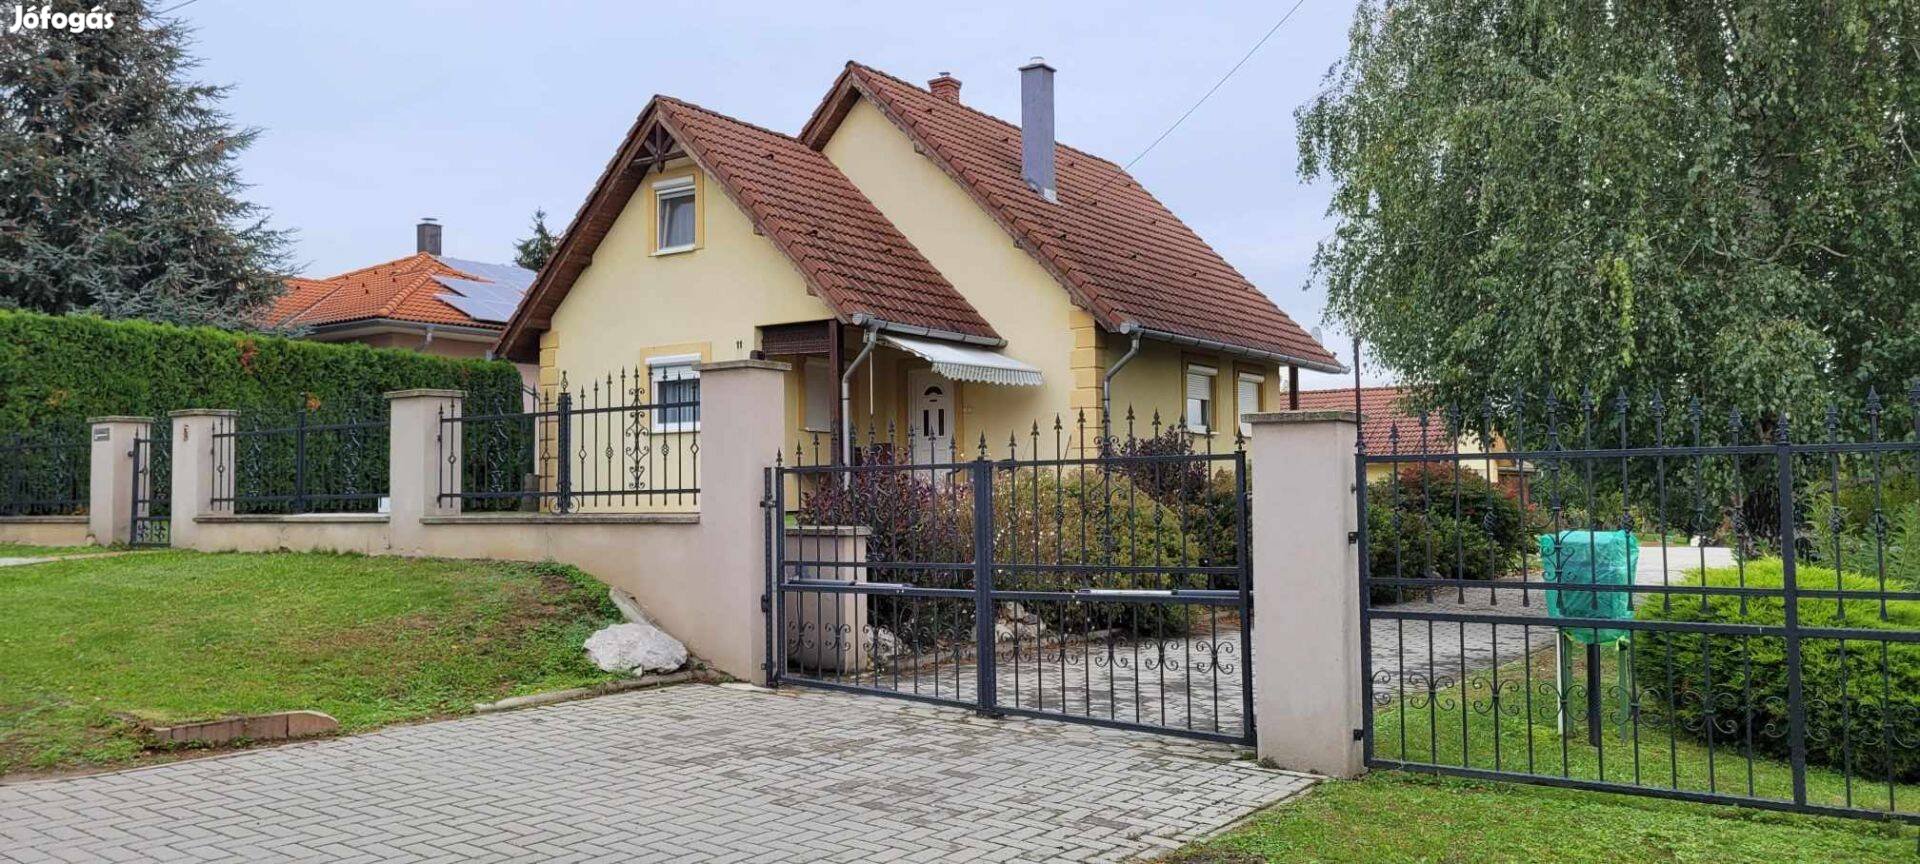 Zalaegerszegtől 9 km-re, 120m2 családi ház eladó!